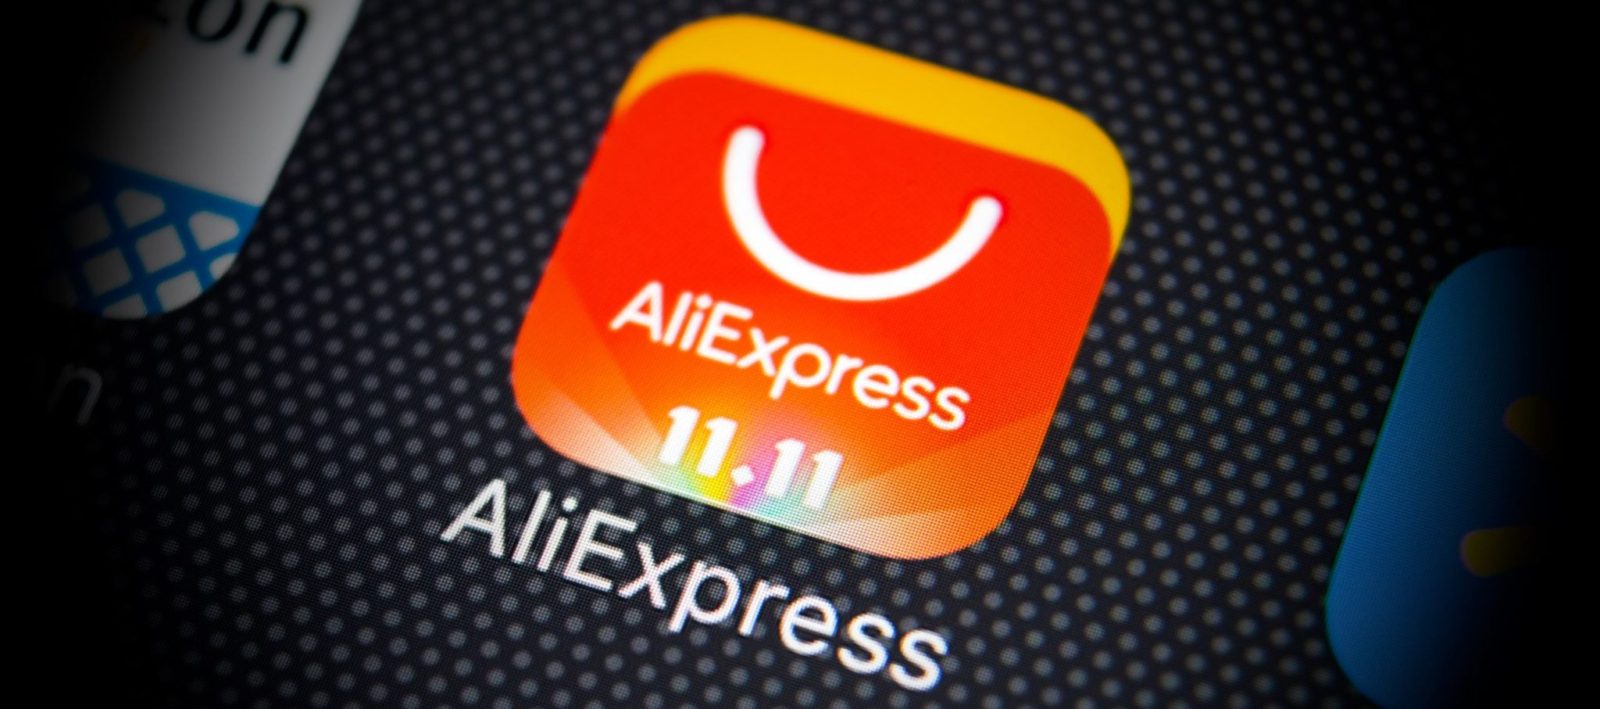 Скидки AliExpress 11.11 будут раздавать в магазинах «Пятерочка»